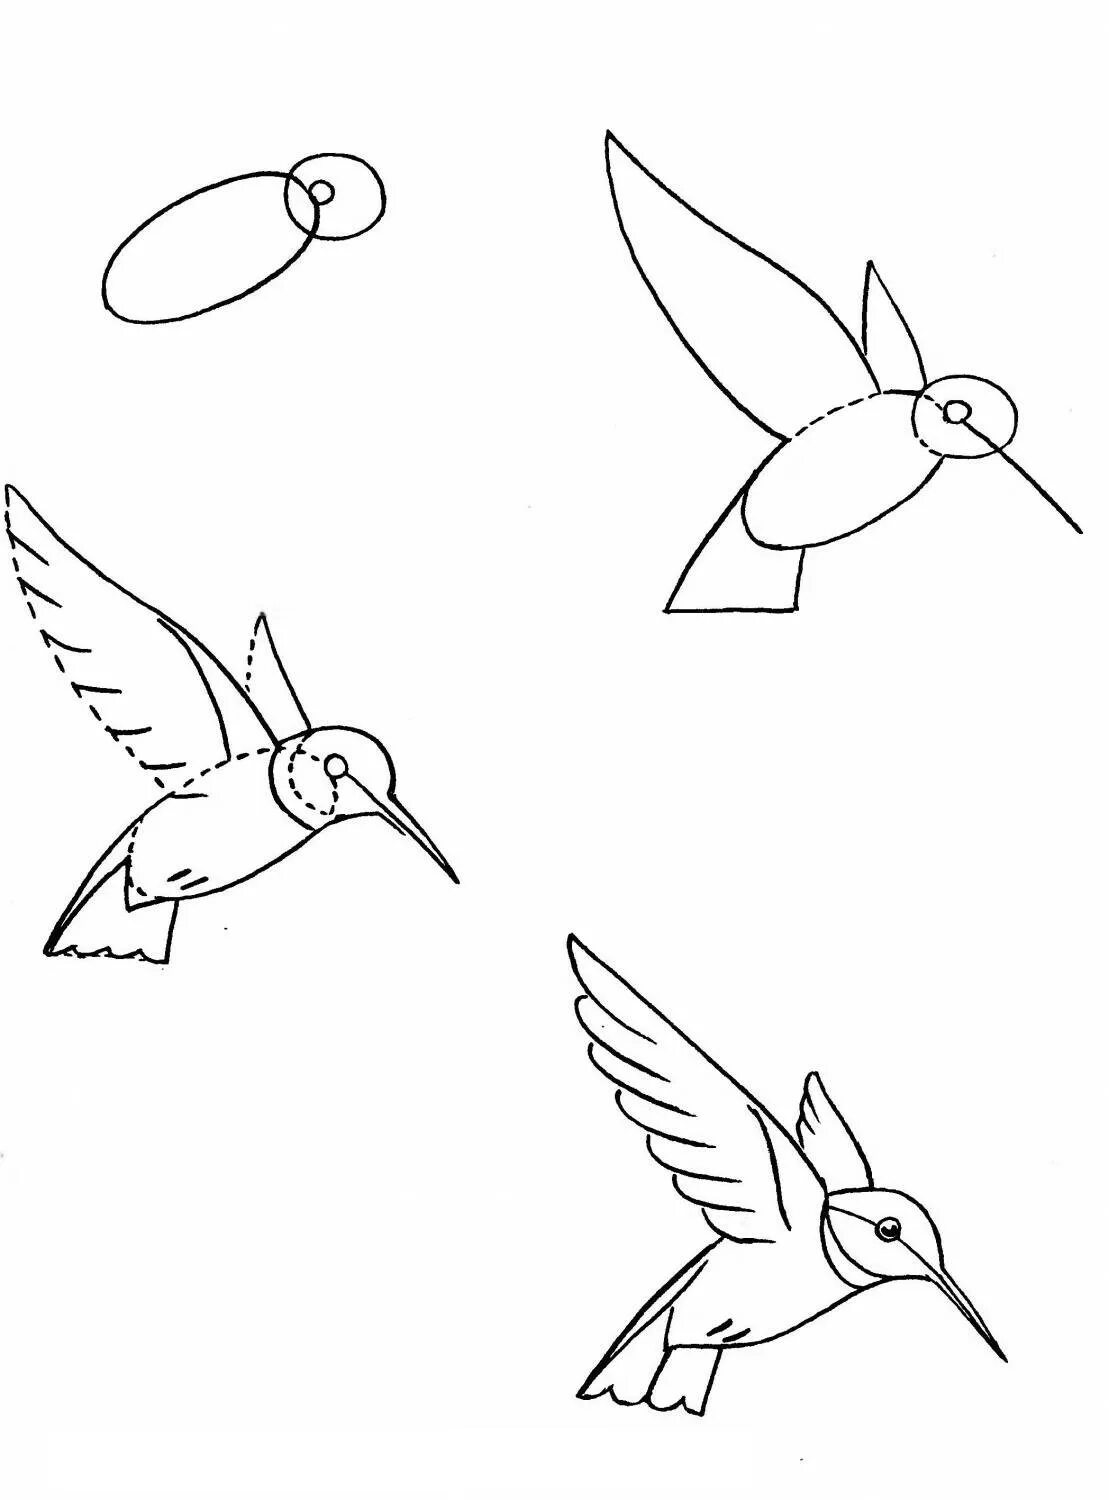 Птица рисунок пошагово. Рисунок птицы карандашом поэтапно. Рисунки птиц карандашом для начинающих. Птица рисунок карандашом для детей.